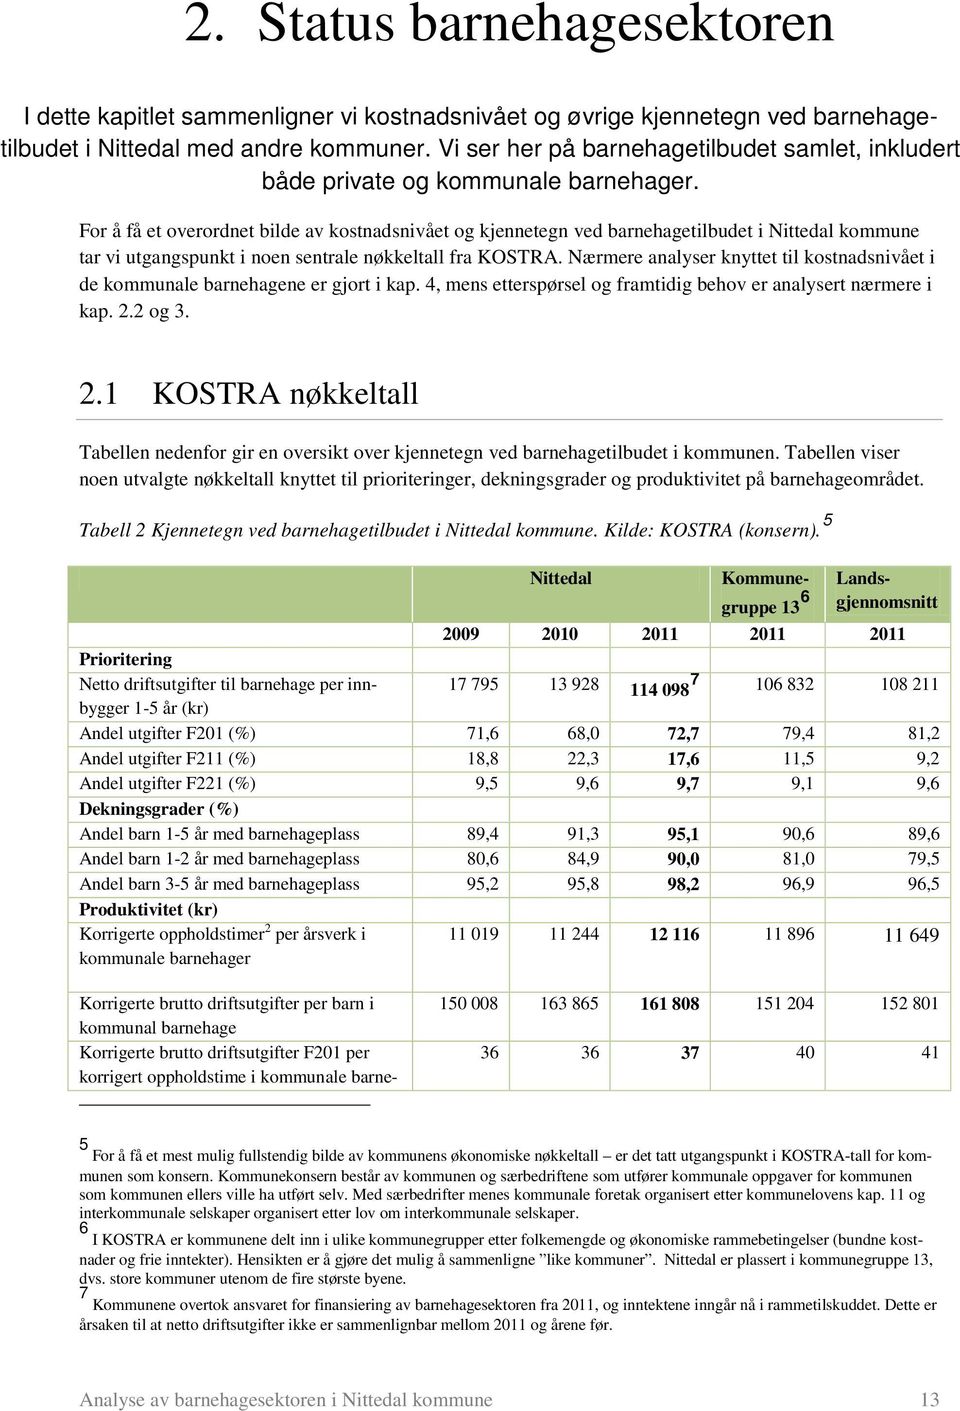 For å få et overordnet bilde av kostnadsnivået og kjennetegn ved barnehagetilbudet i Nittedal kommune tar vi utgangspunkt i noen sentrale nøkkeltall fra KOSTRA.